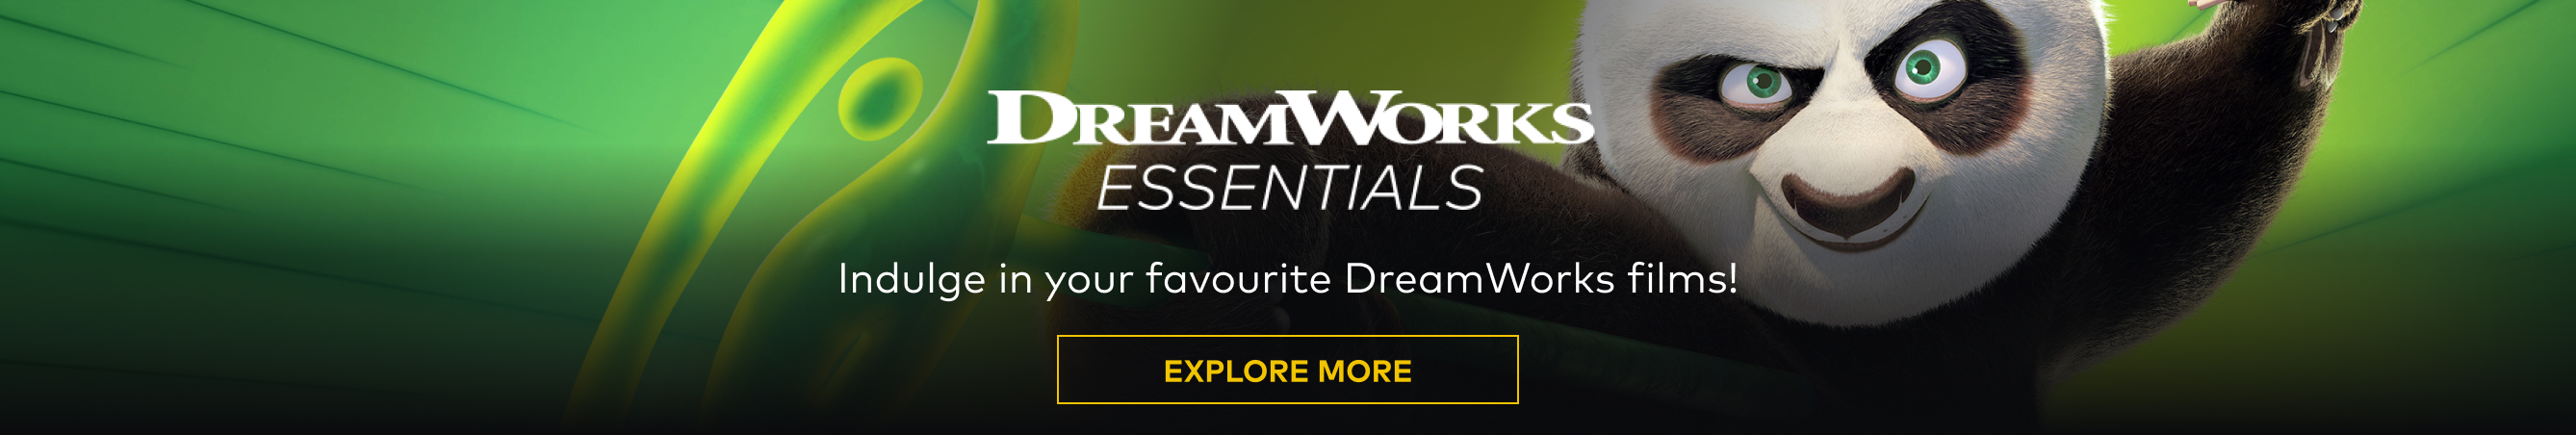 Dreamworks Essentials